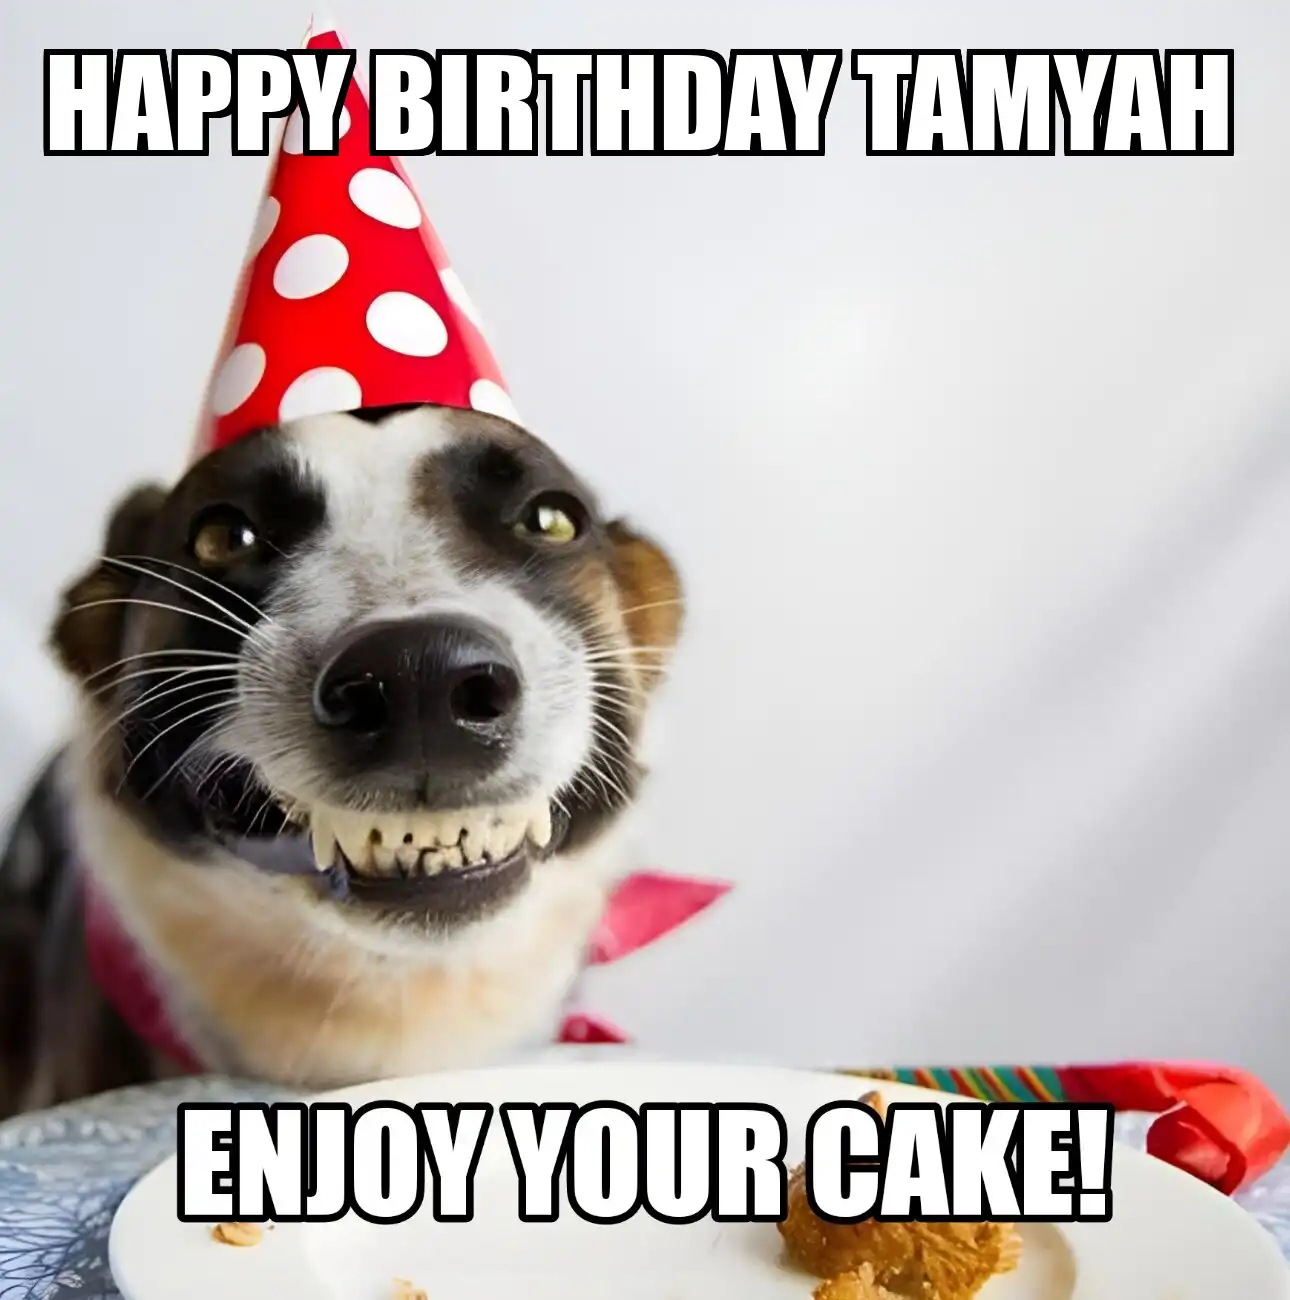 Happy Birthday Tamyah Enjoy Your Cake Dog Meme